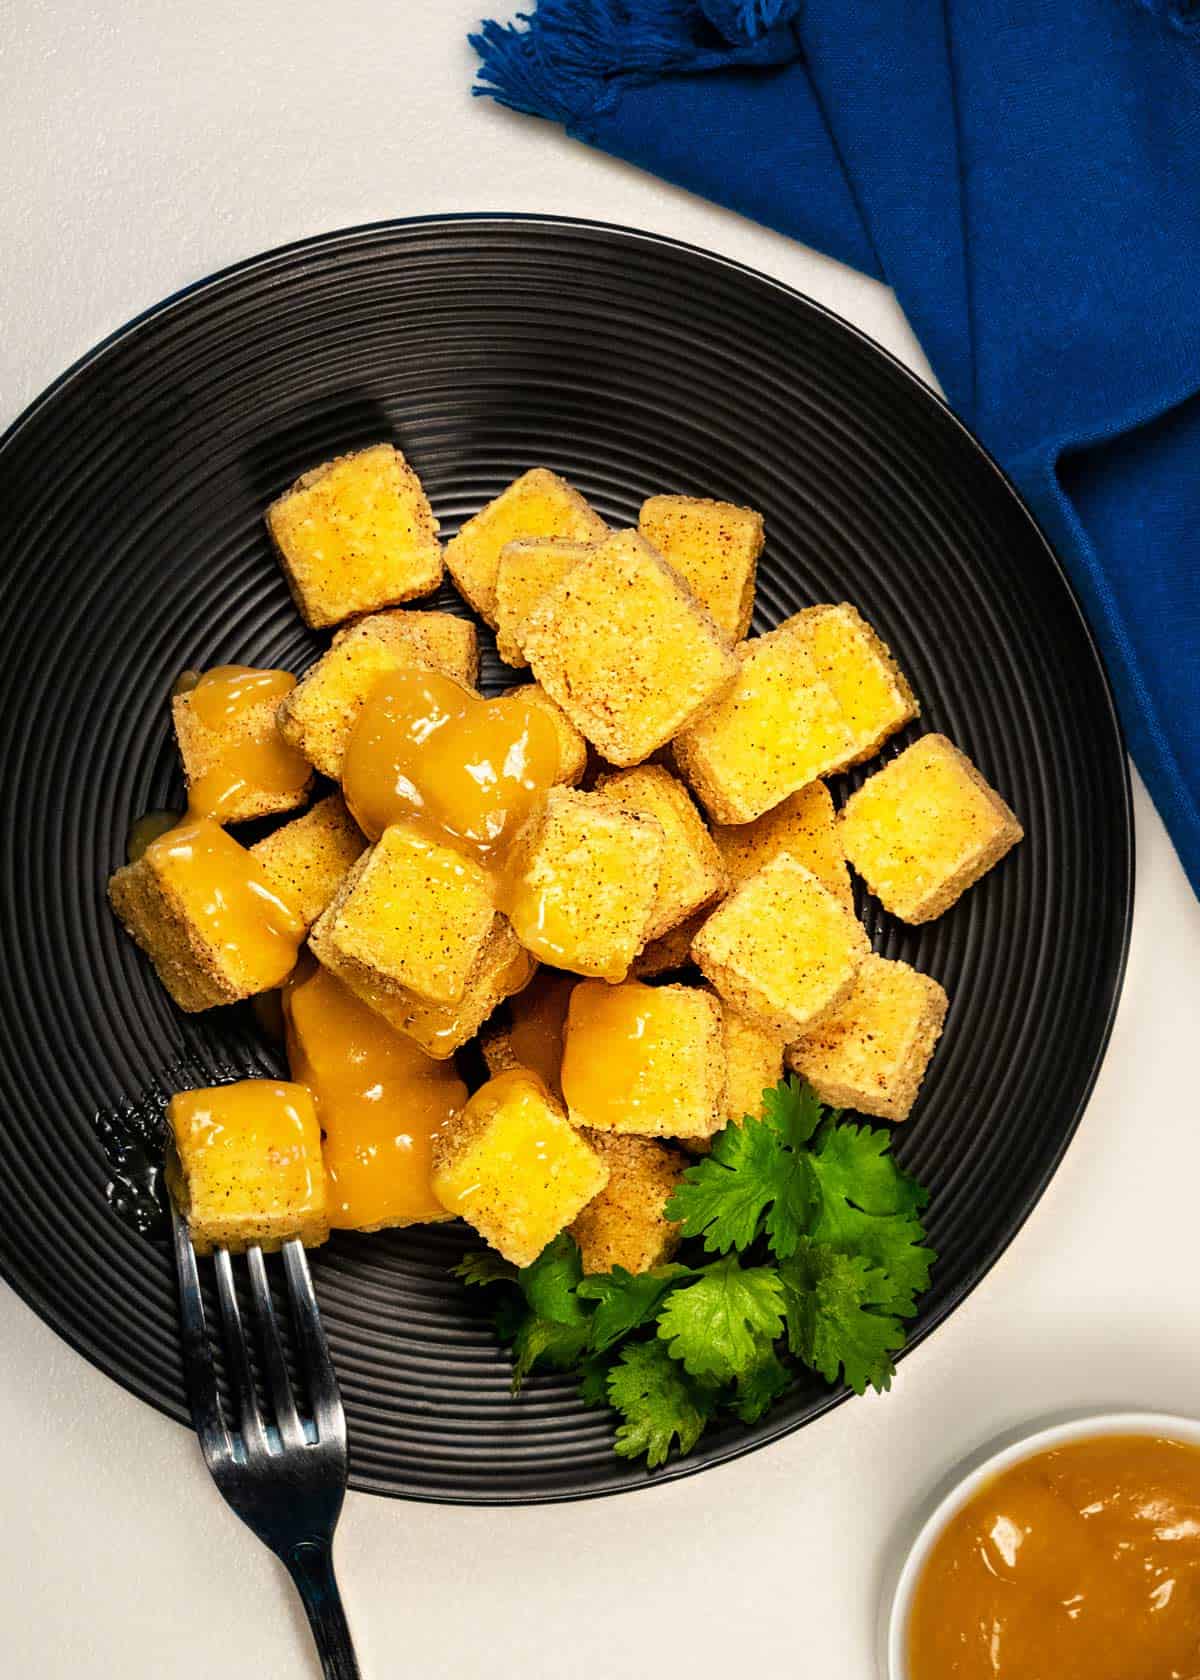 Plate of crispy tofu bites with orange sauce.